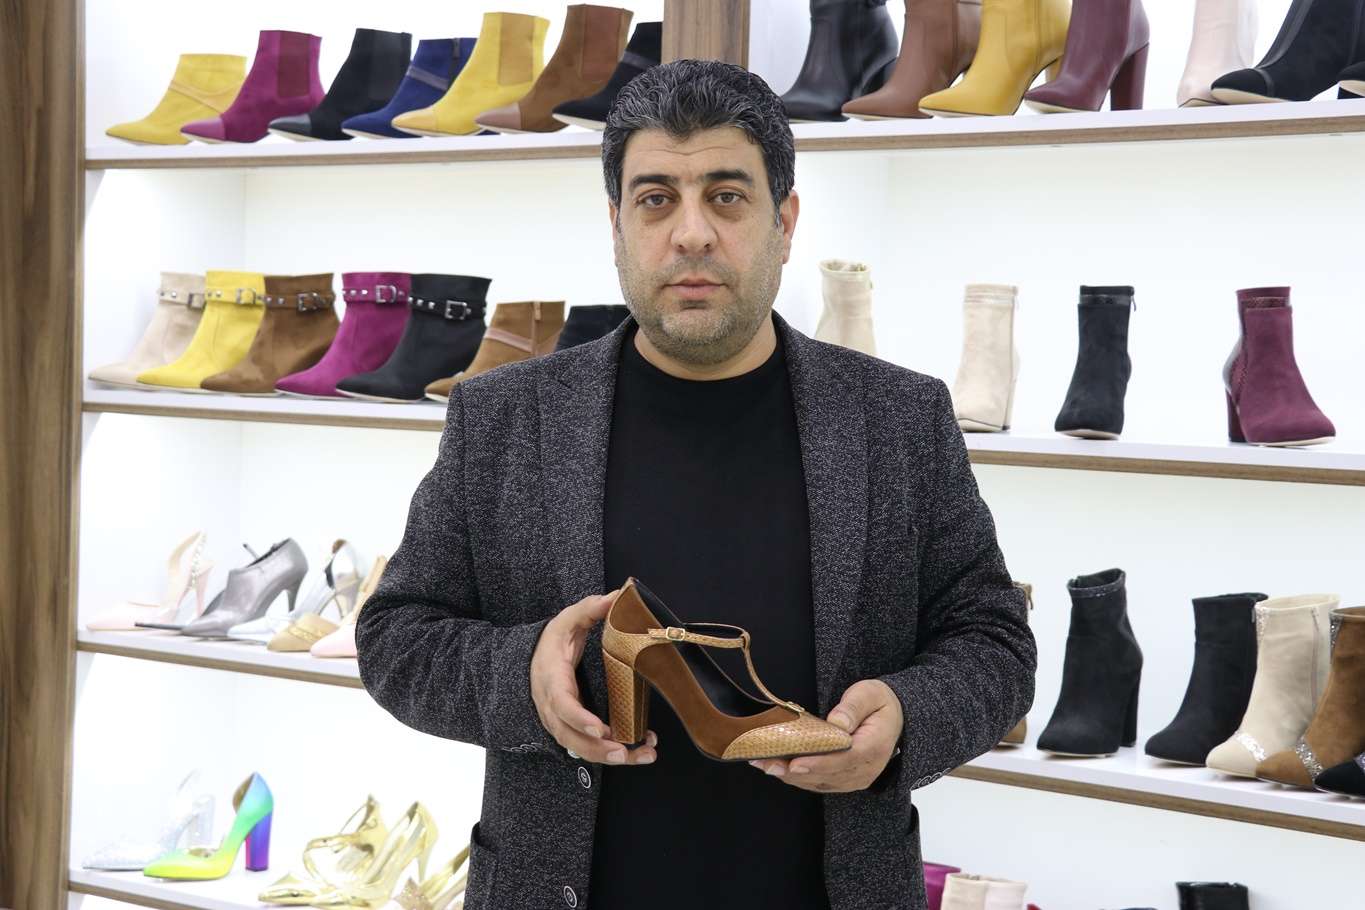 Ayakkabı ustaları Suriye’deki mesleklerini Gaziantep’te sürdürüyorlar